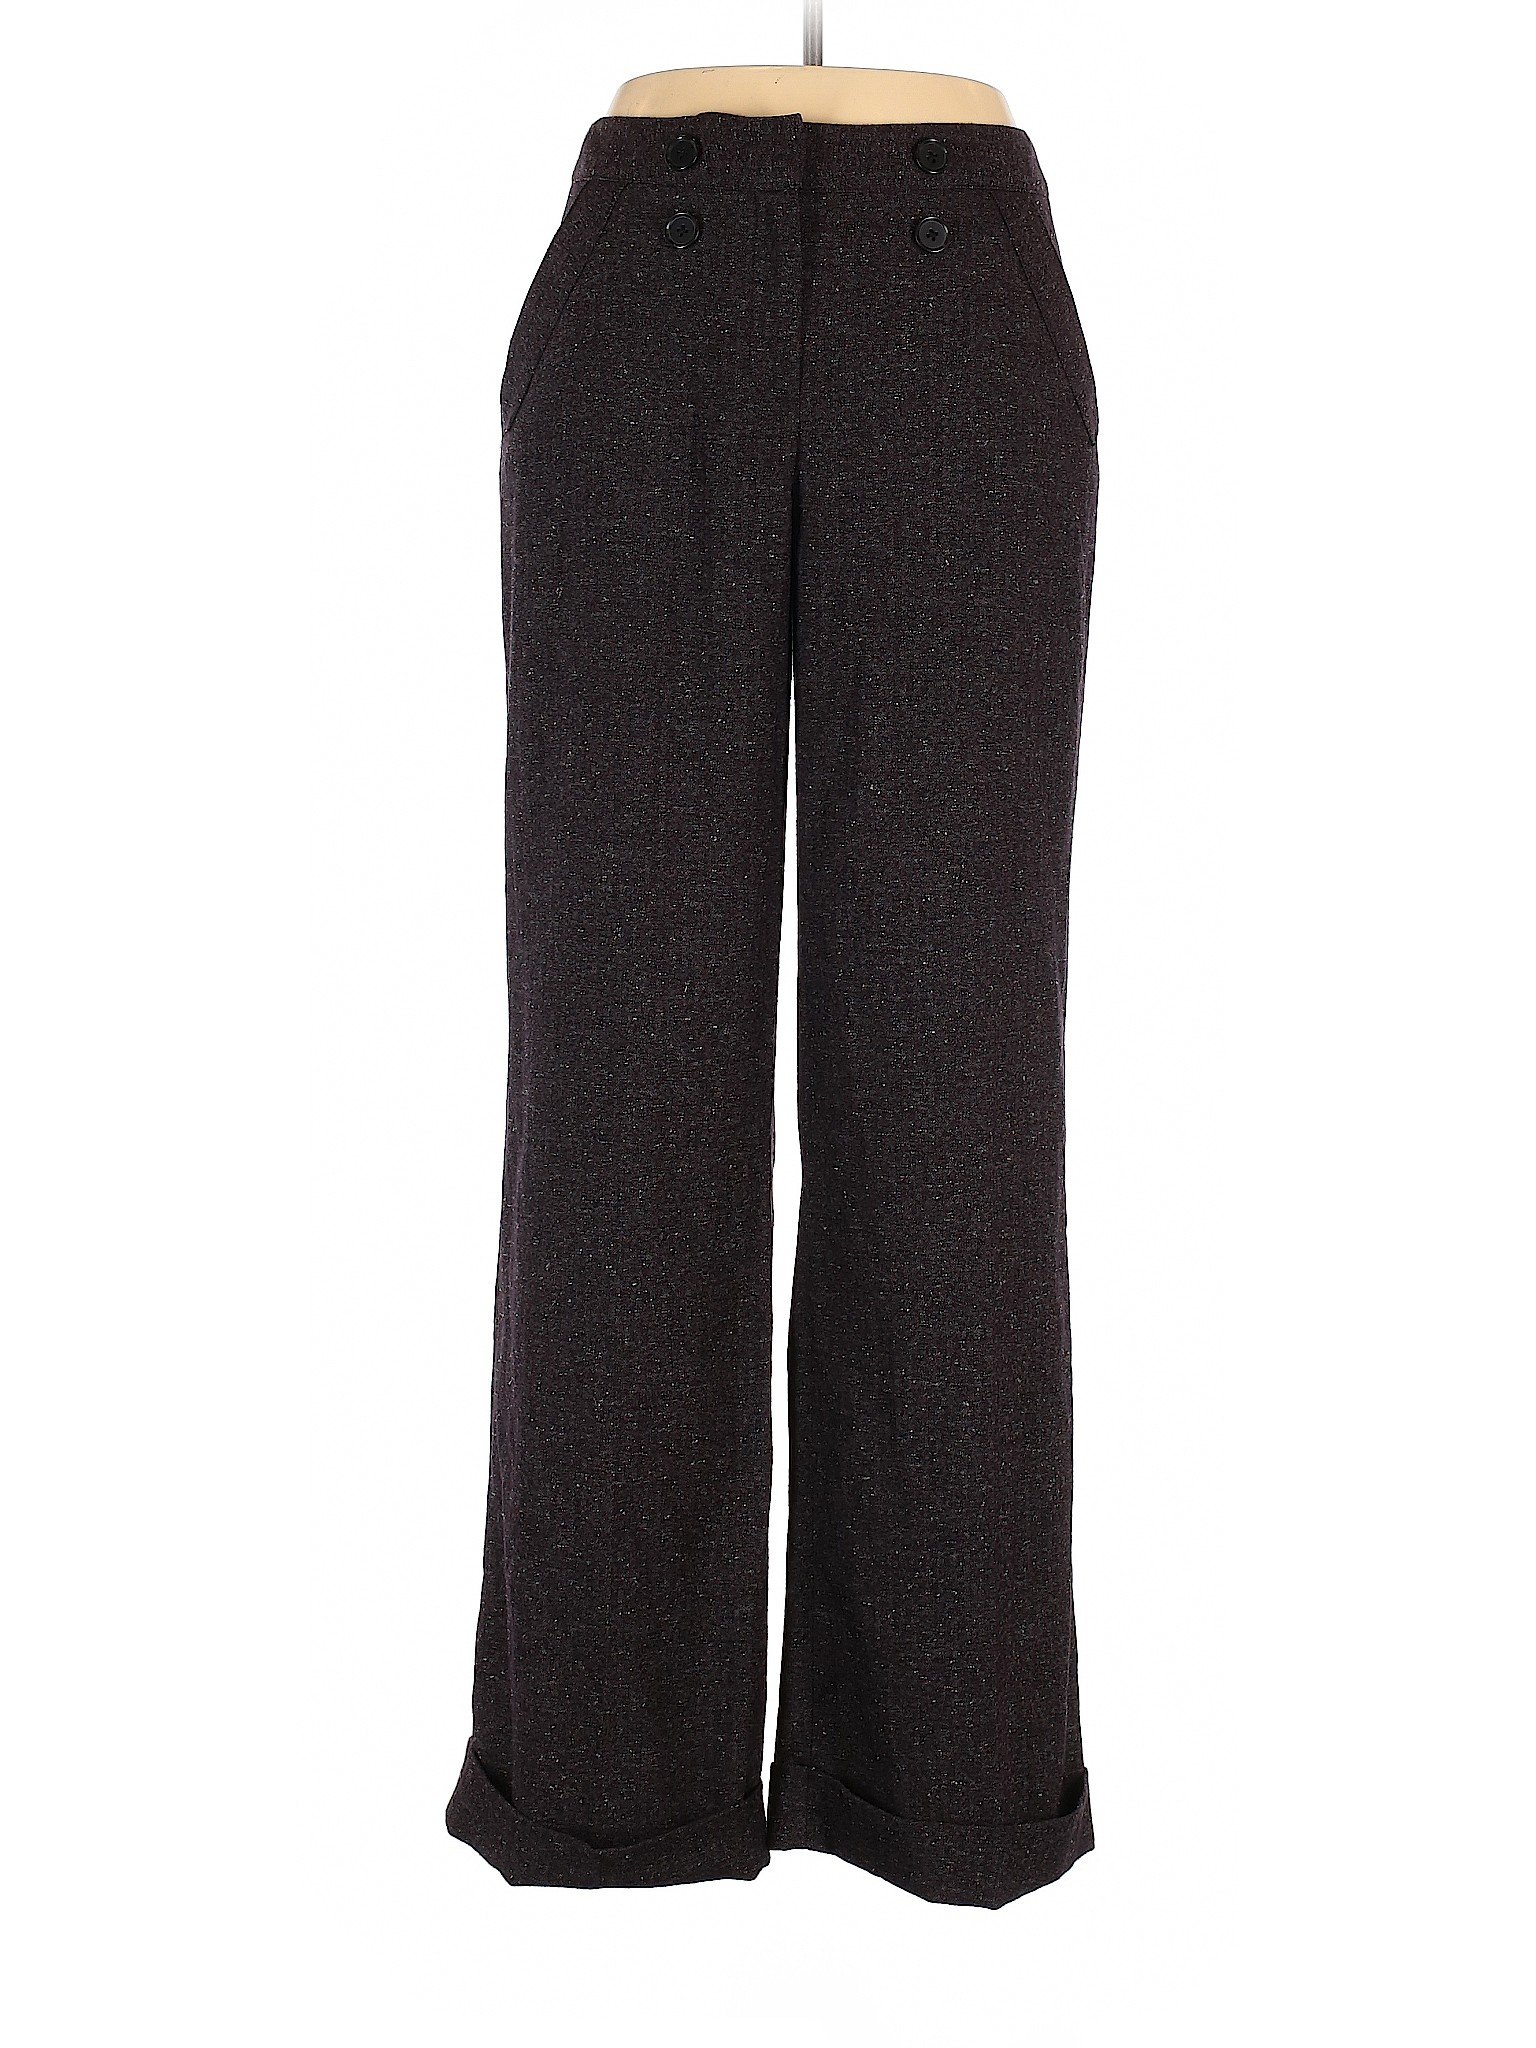 DressBarn Women Black Dress Pants 14 | eBay